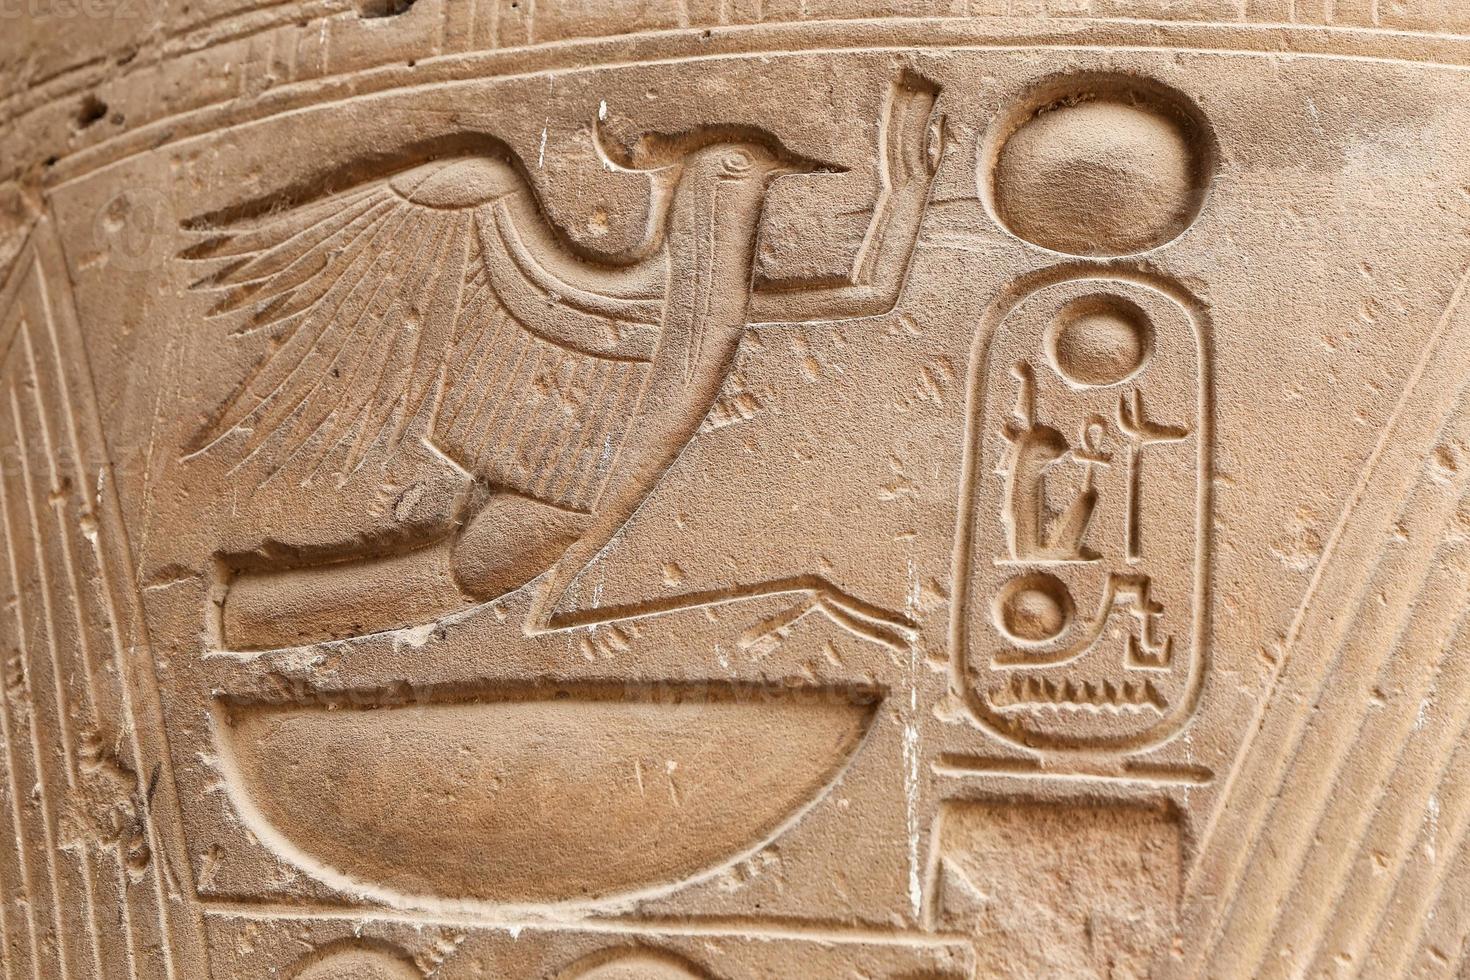 jeroglíficos egipcios en el templo de luxor, luxor, egipto foto